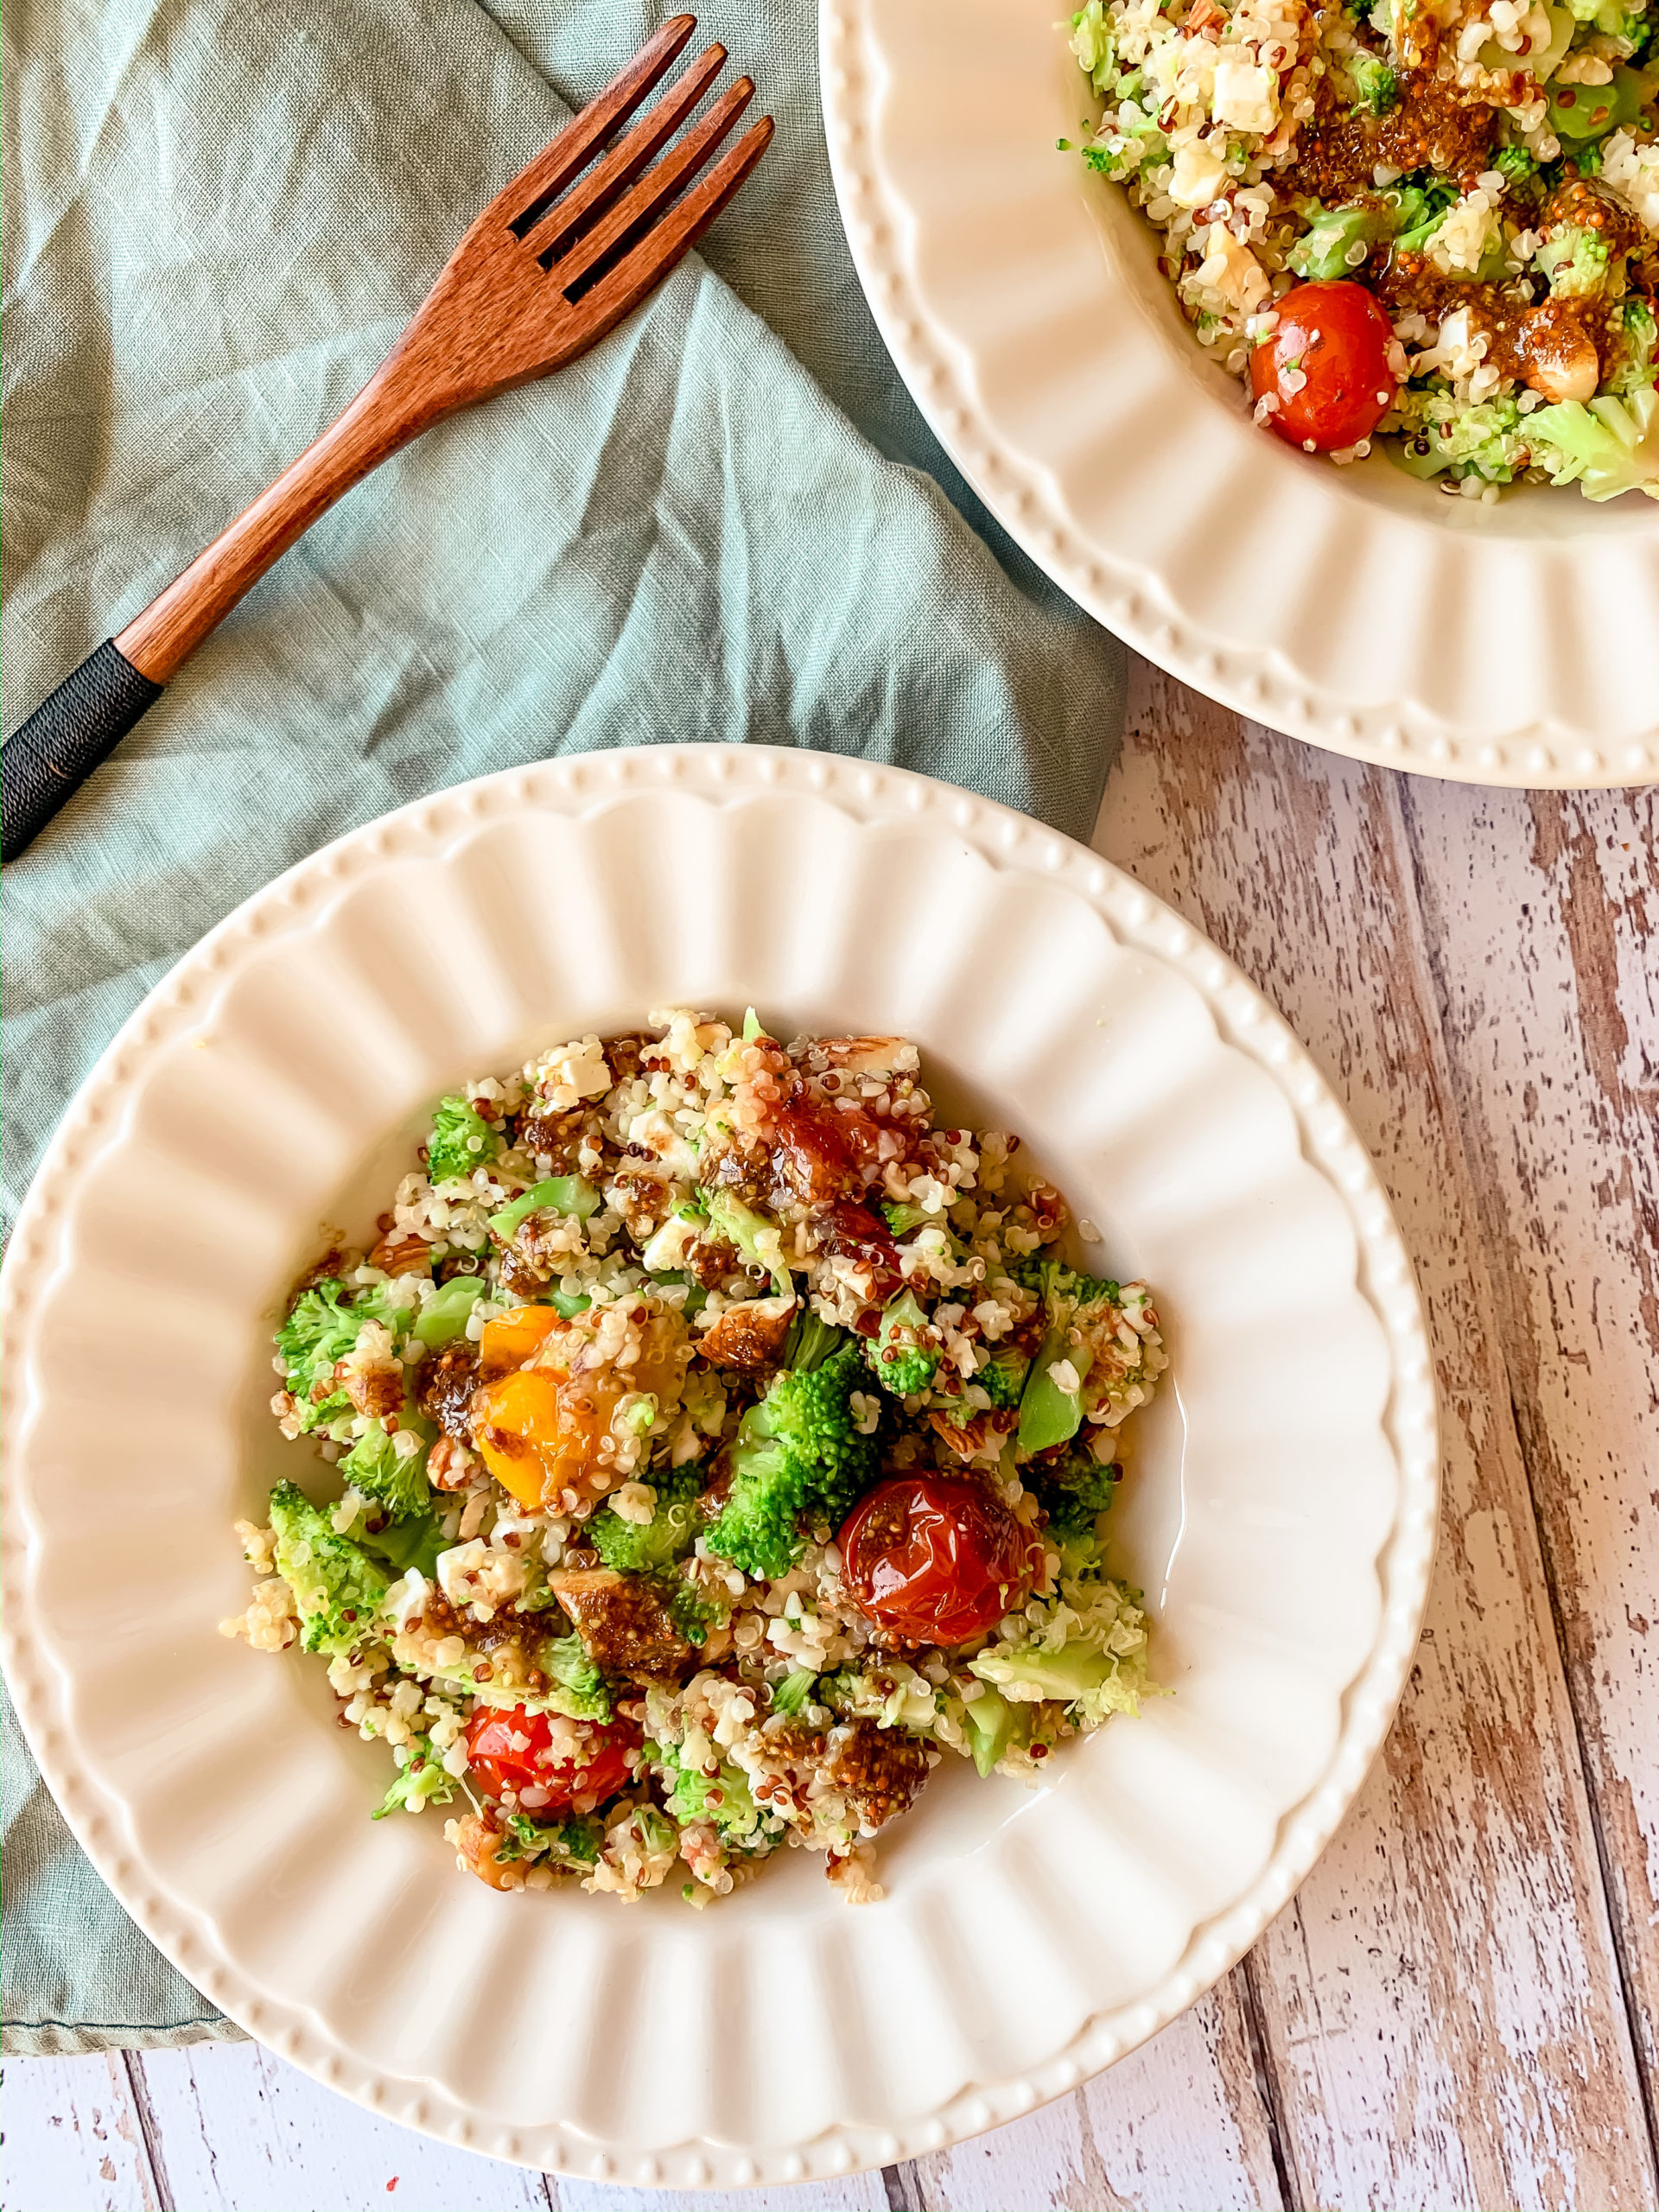 Salade de quinoa et brocoli